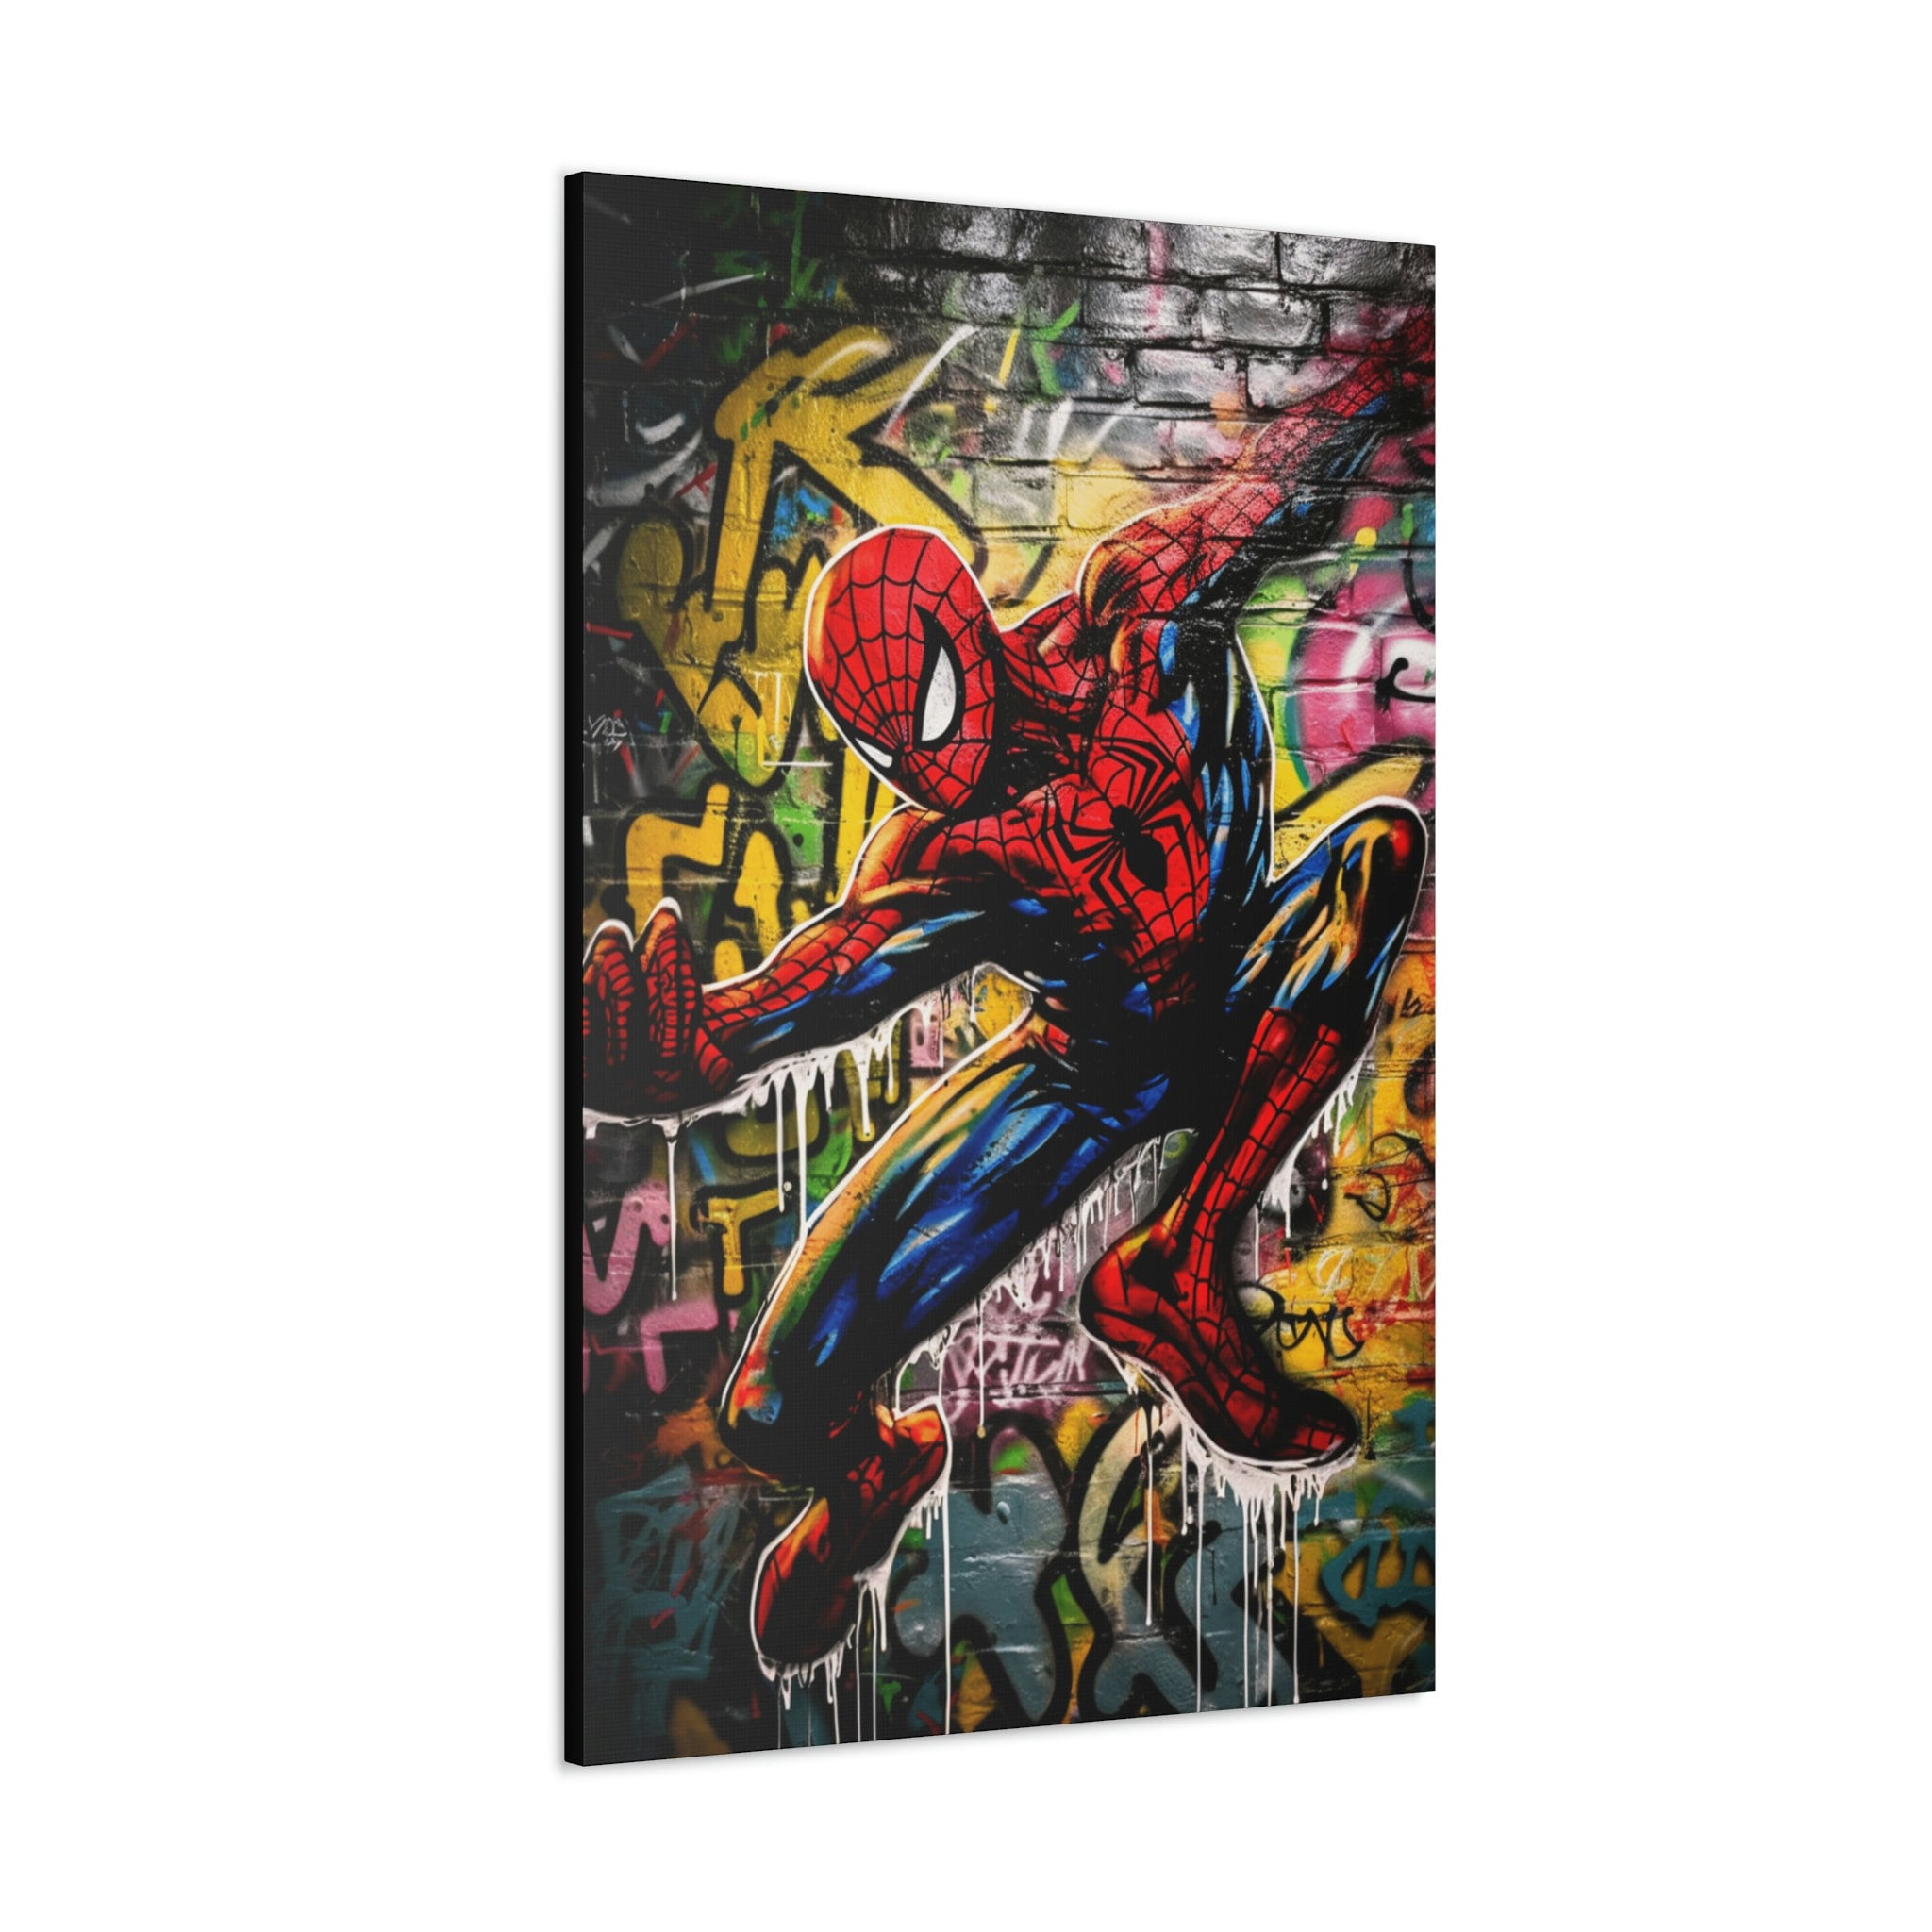 Playmobil xxl :Comics (spiderman) and graffiti art Sculpture by